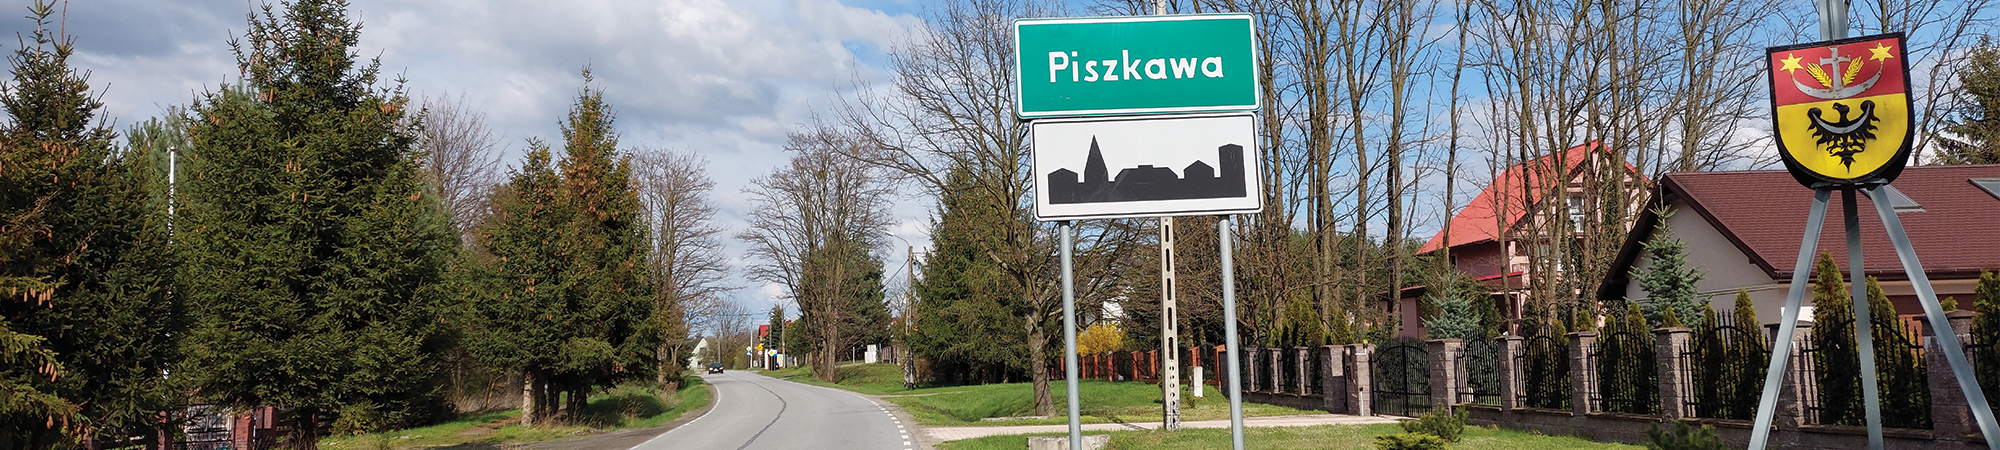 panorama - miejscowość Piszkawa